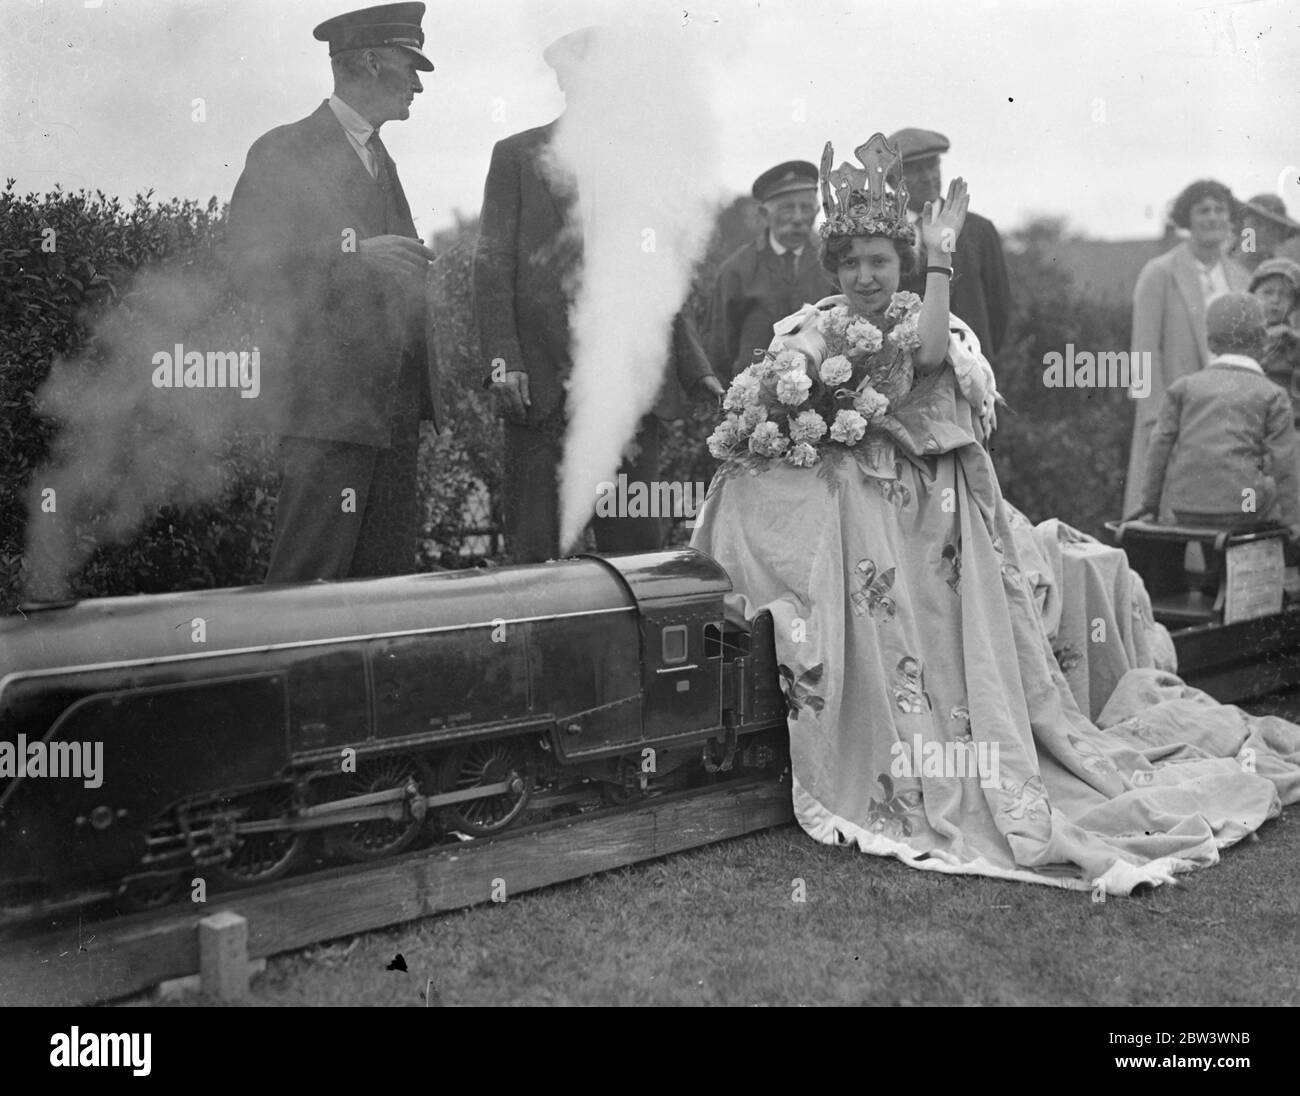 Krönende die Blumenkönigin bei der Südbahn Blumenschau. Die Krönung von Miss Violet E Larcomb als Floral Queen war eines der Ereignisse auf der achten jährlichen Blume, Obst und vegetable Show der Southern Railway und Ost-und Zentralsektionen (London Bereich), die auf dem Sportplatz stattfand, Plough Lane, Waddon . Foto zeigt, Miss Violet E Larcomb sitzt auf einem Modellzug. . 19 August 1936 19 August 1936 Stockfoto